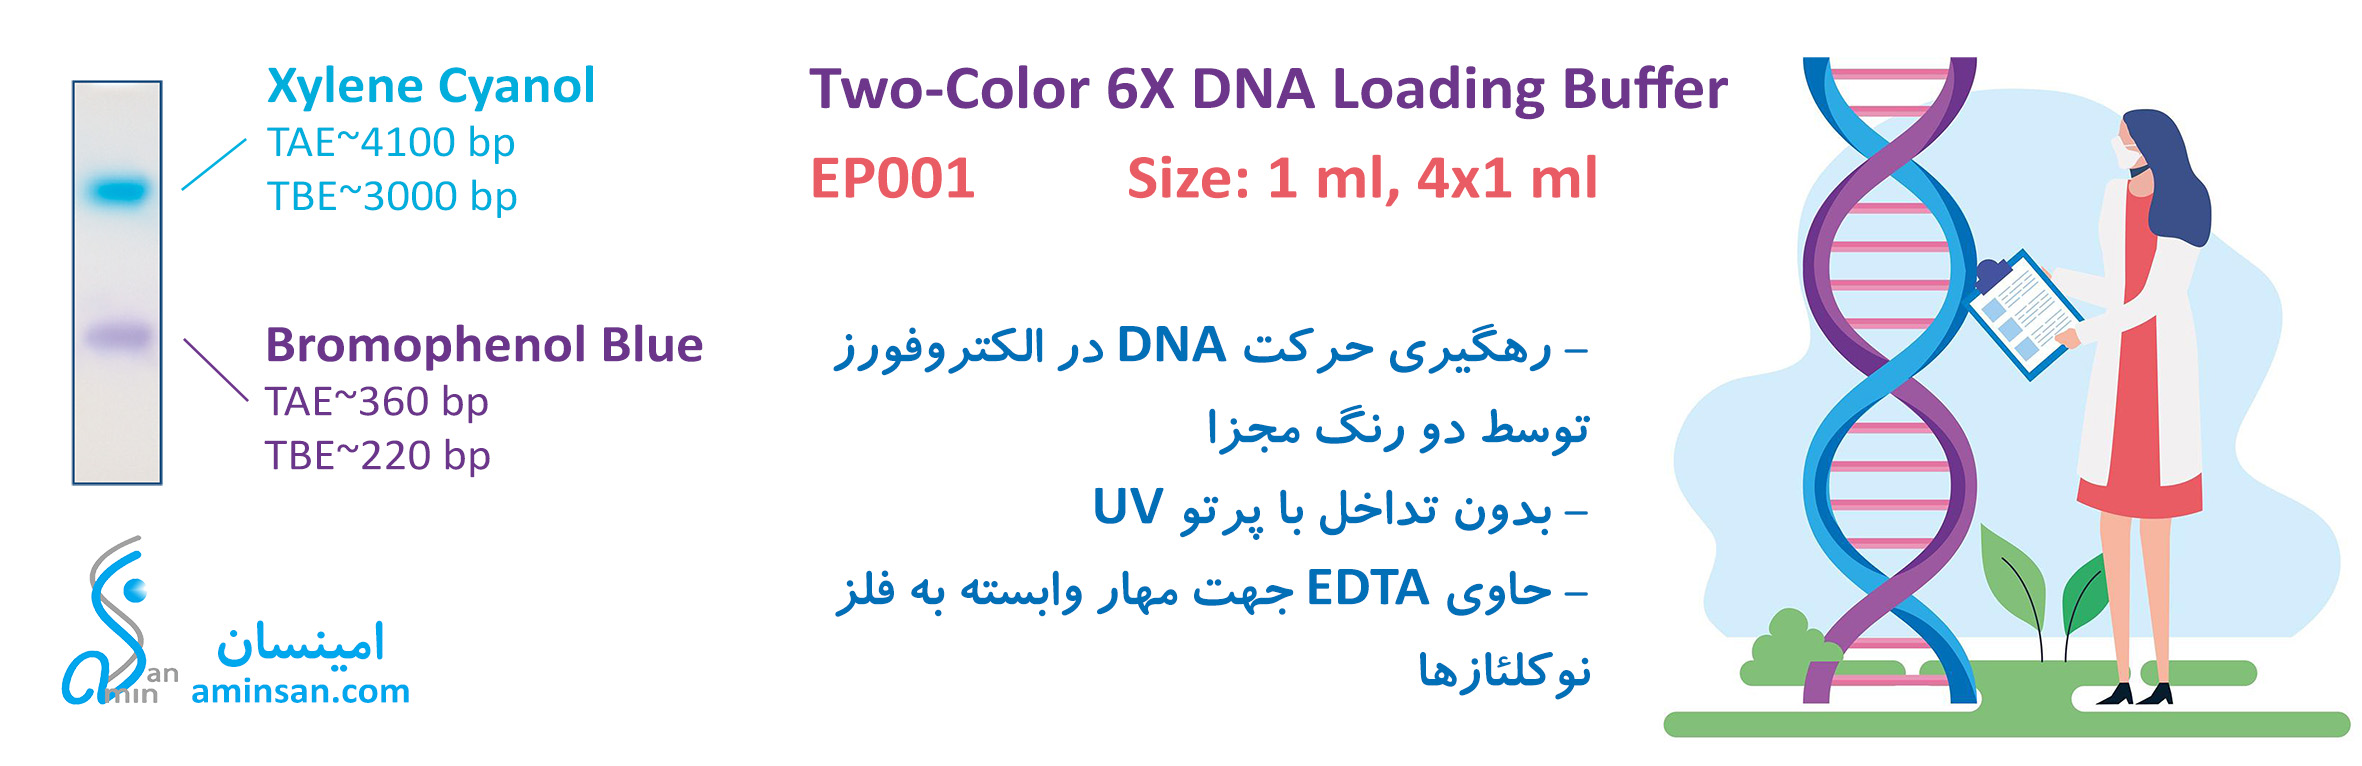 loading-dye-2c